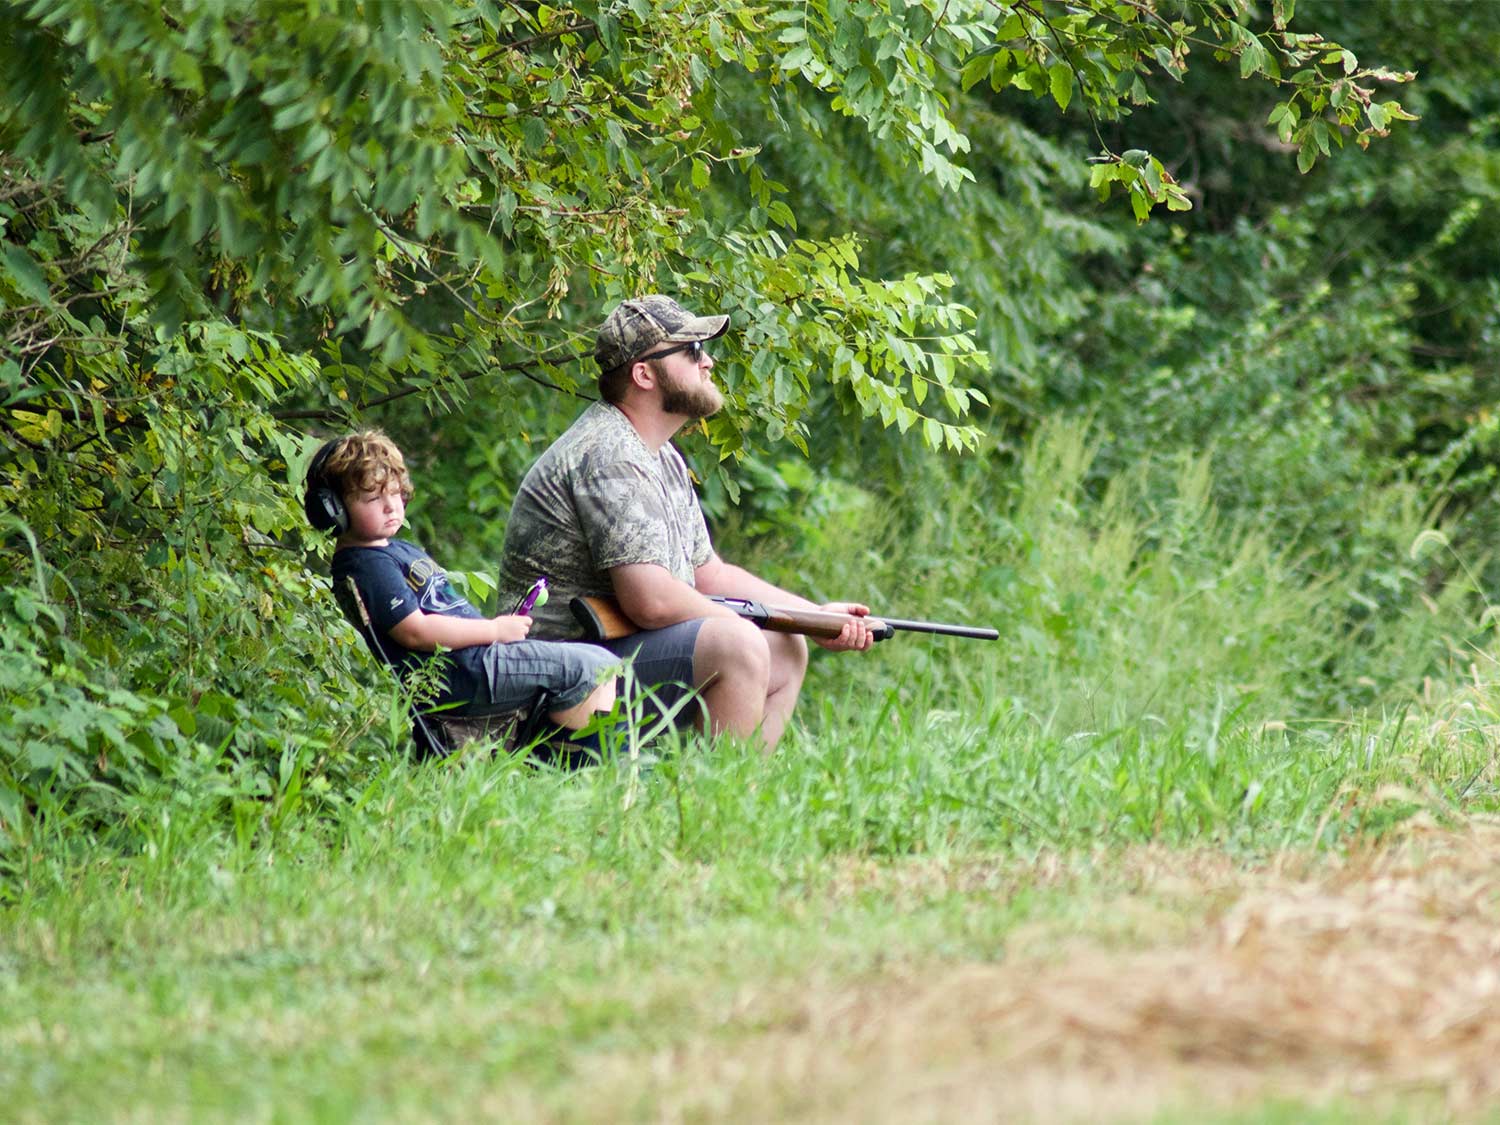 一个男人和一个小孩坐在田野的边缘去打猎。